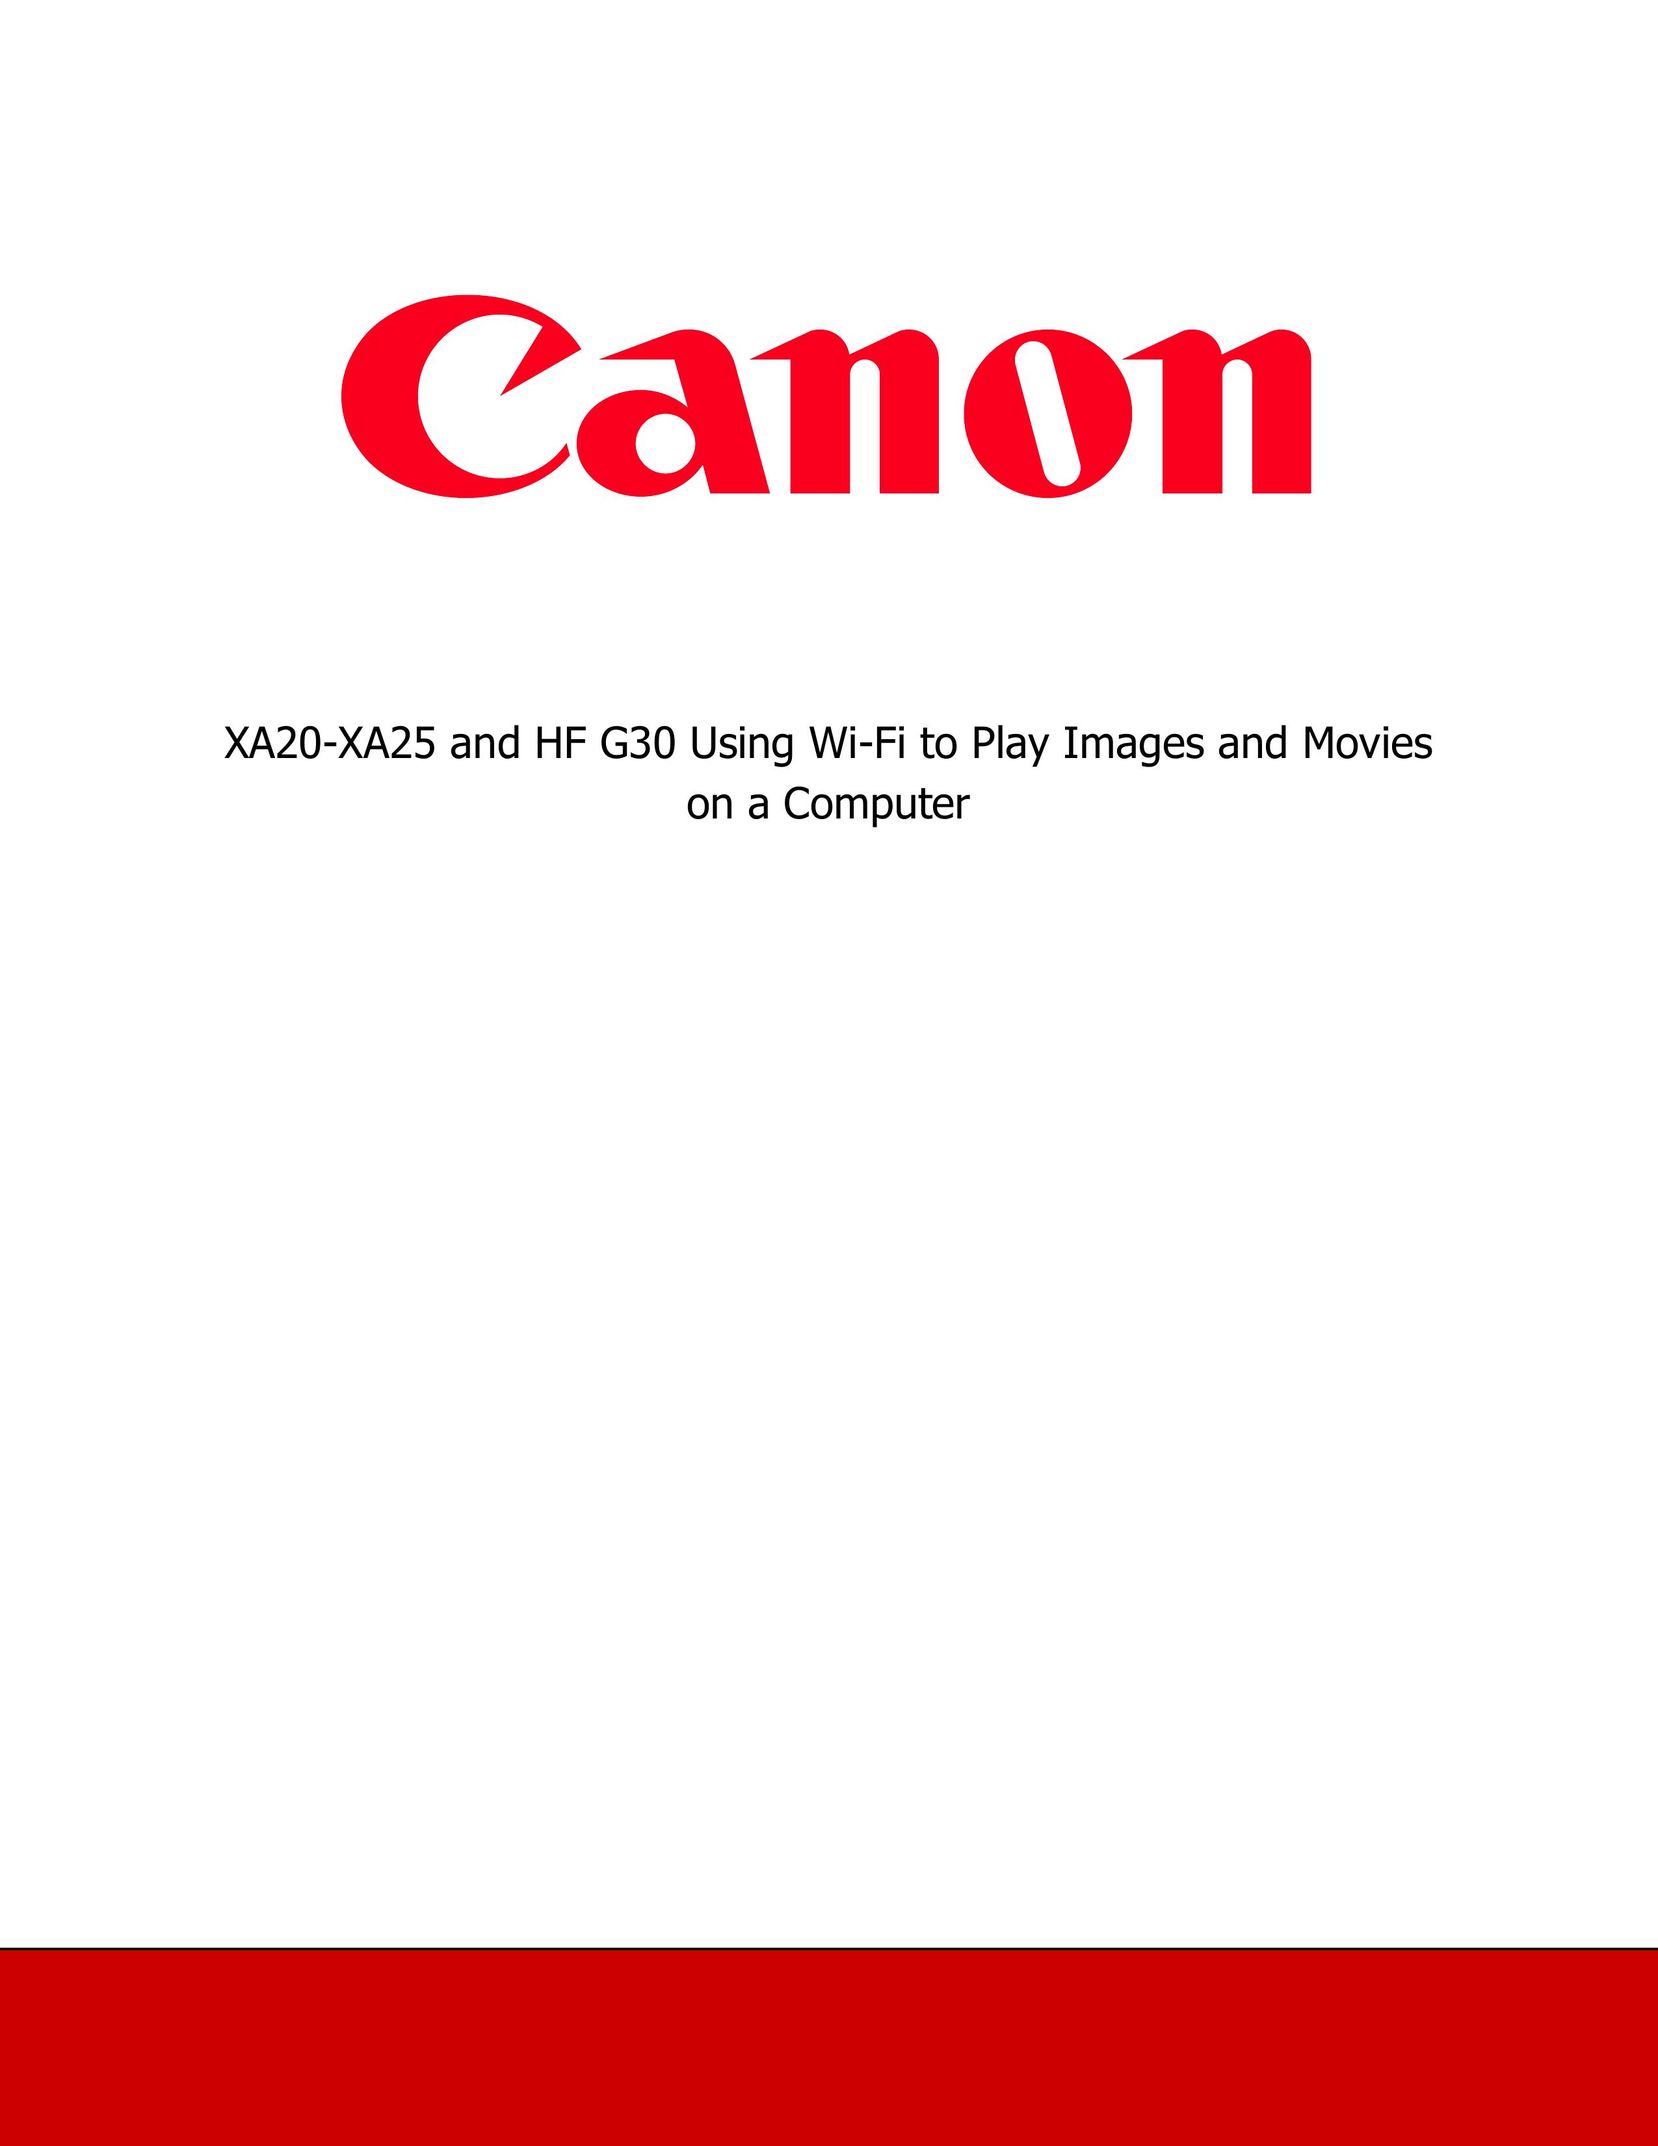 Canon XA25 Home Theater Server User Manual